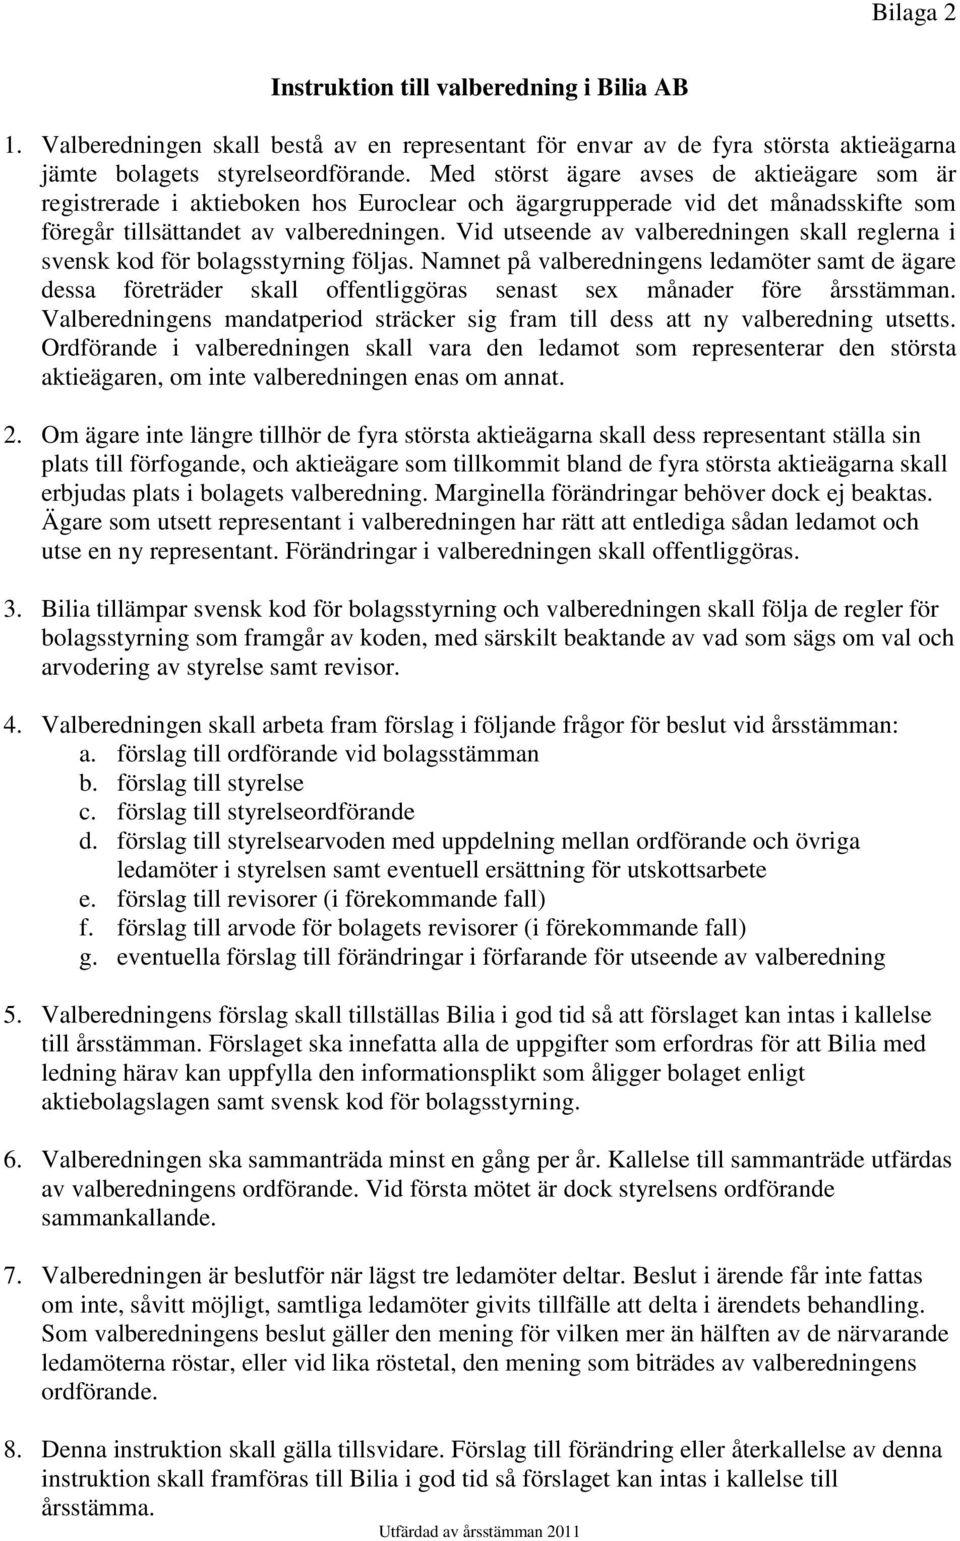 Vid utseende av valberedningen skall reglerna i svensk kod för bolagsstyrning följas.